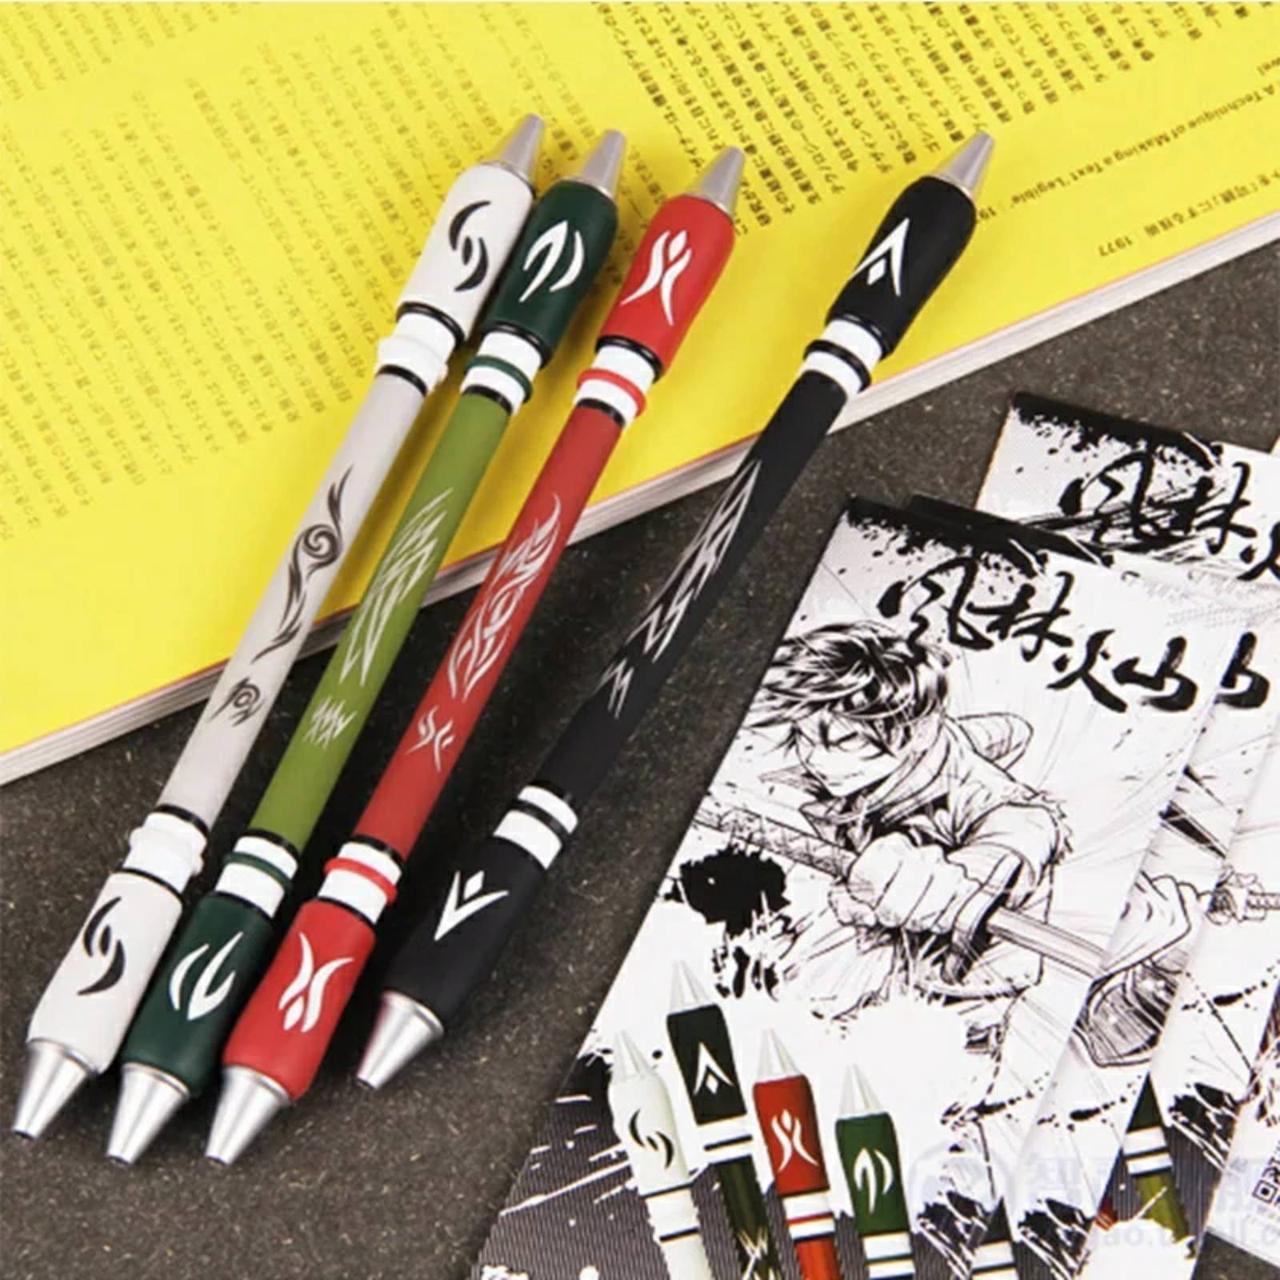 Ручка для піносинінгу Пенспінінг Пенспінер skilltoy Pen spinning zhigao v15